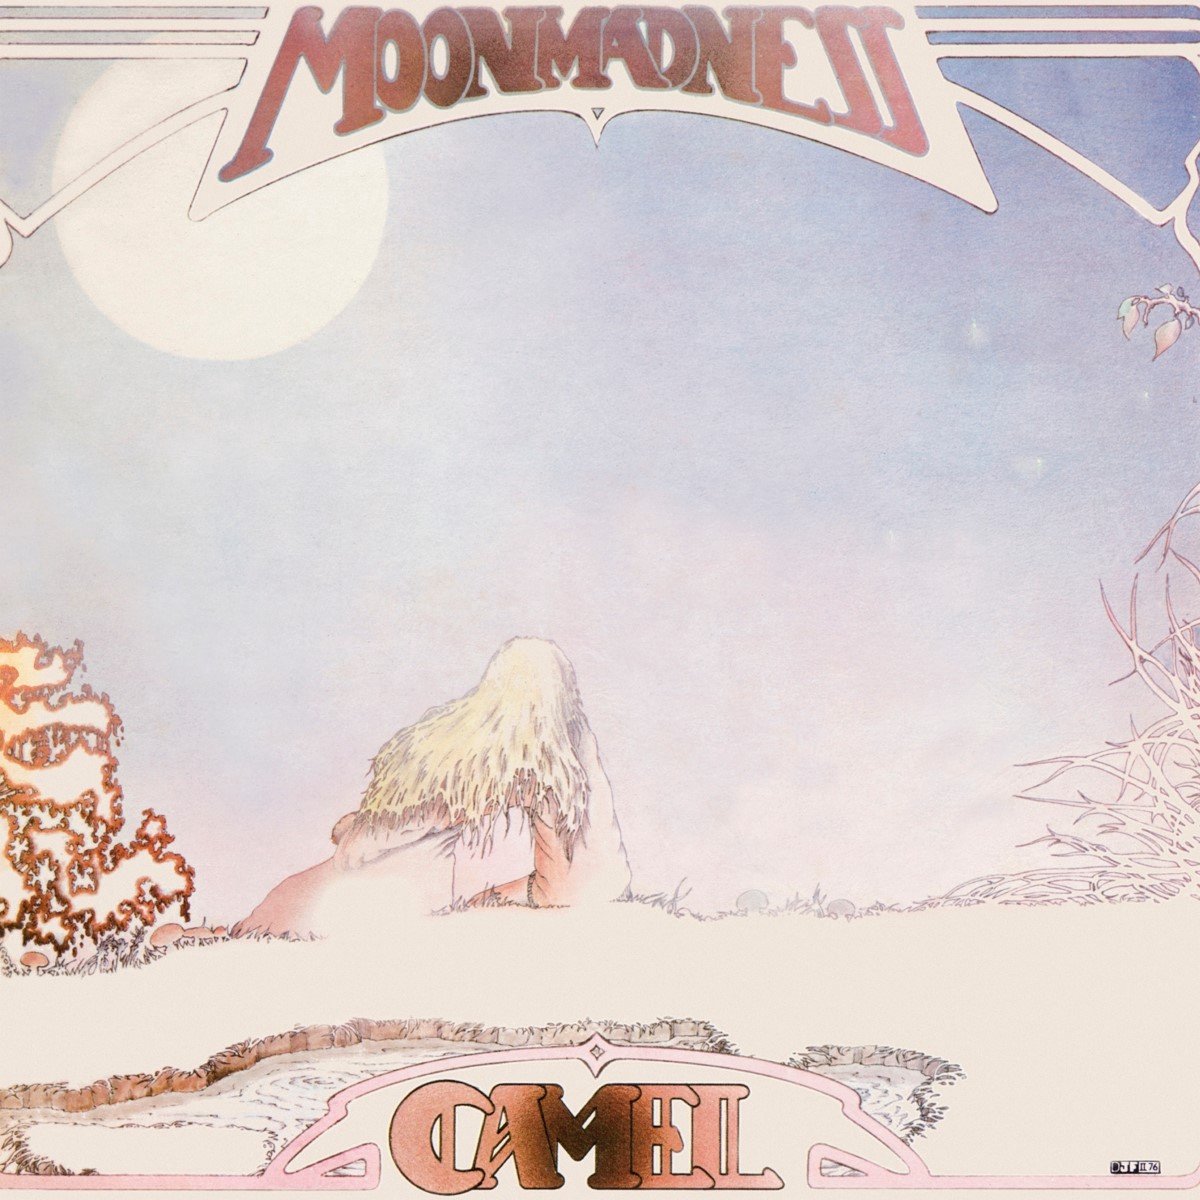 Рок Universal (Aus) Camel - Moonmadness (Black Vinyl LP) автокресло rant zy25f taxi isofix black группа 1 2 3 9 36 кг